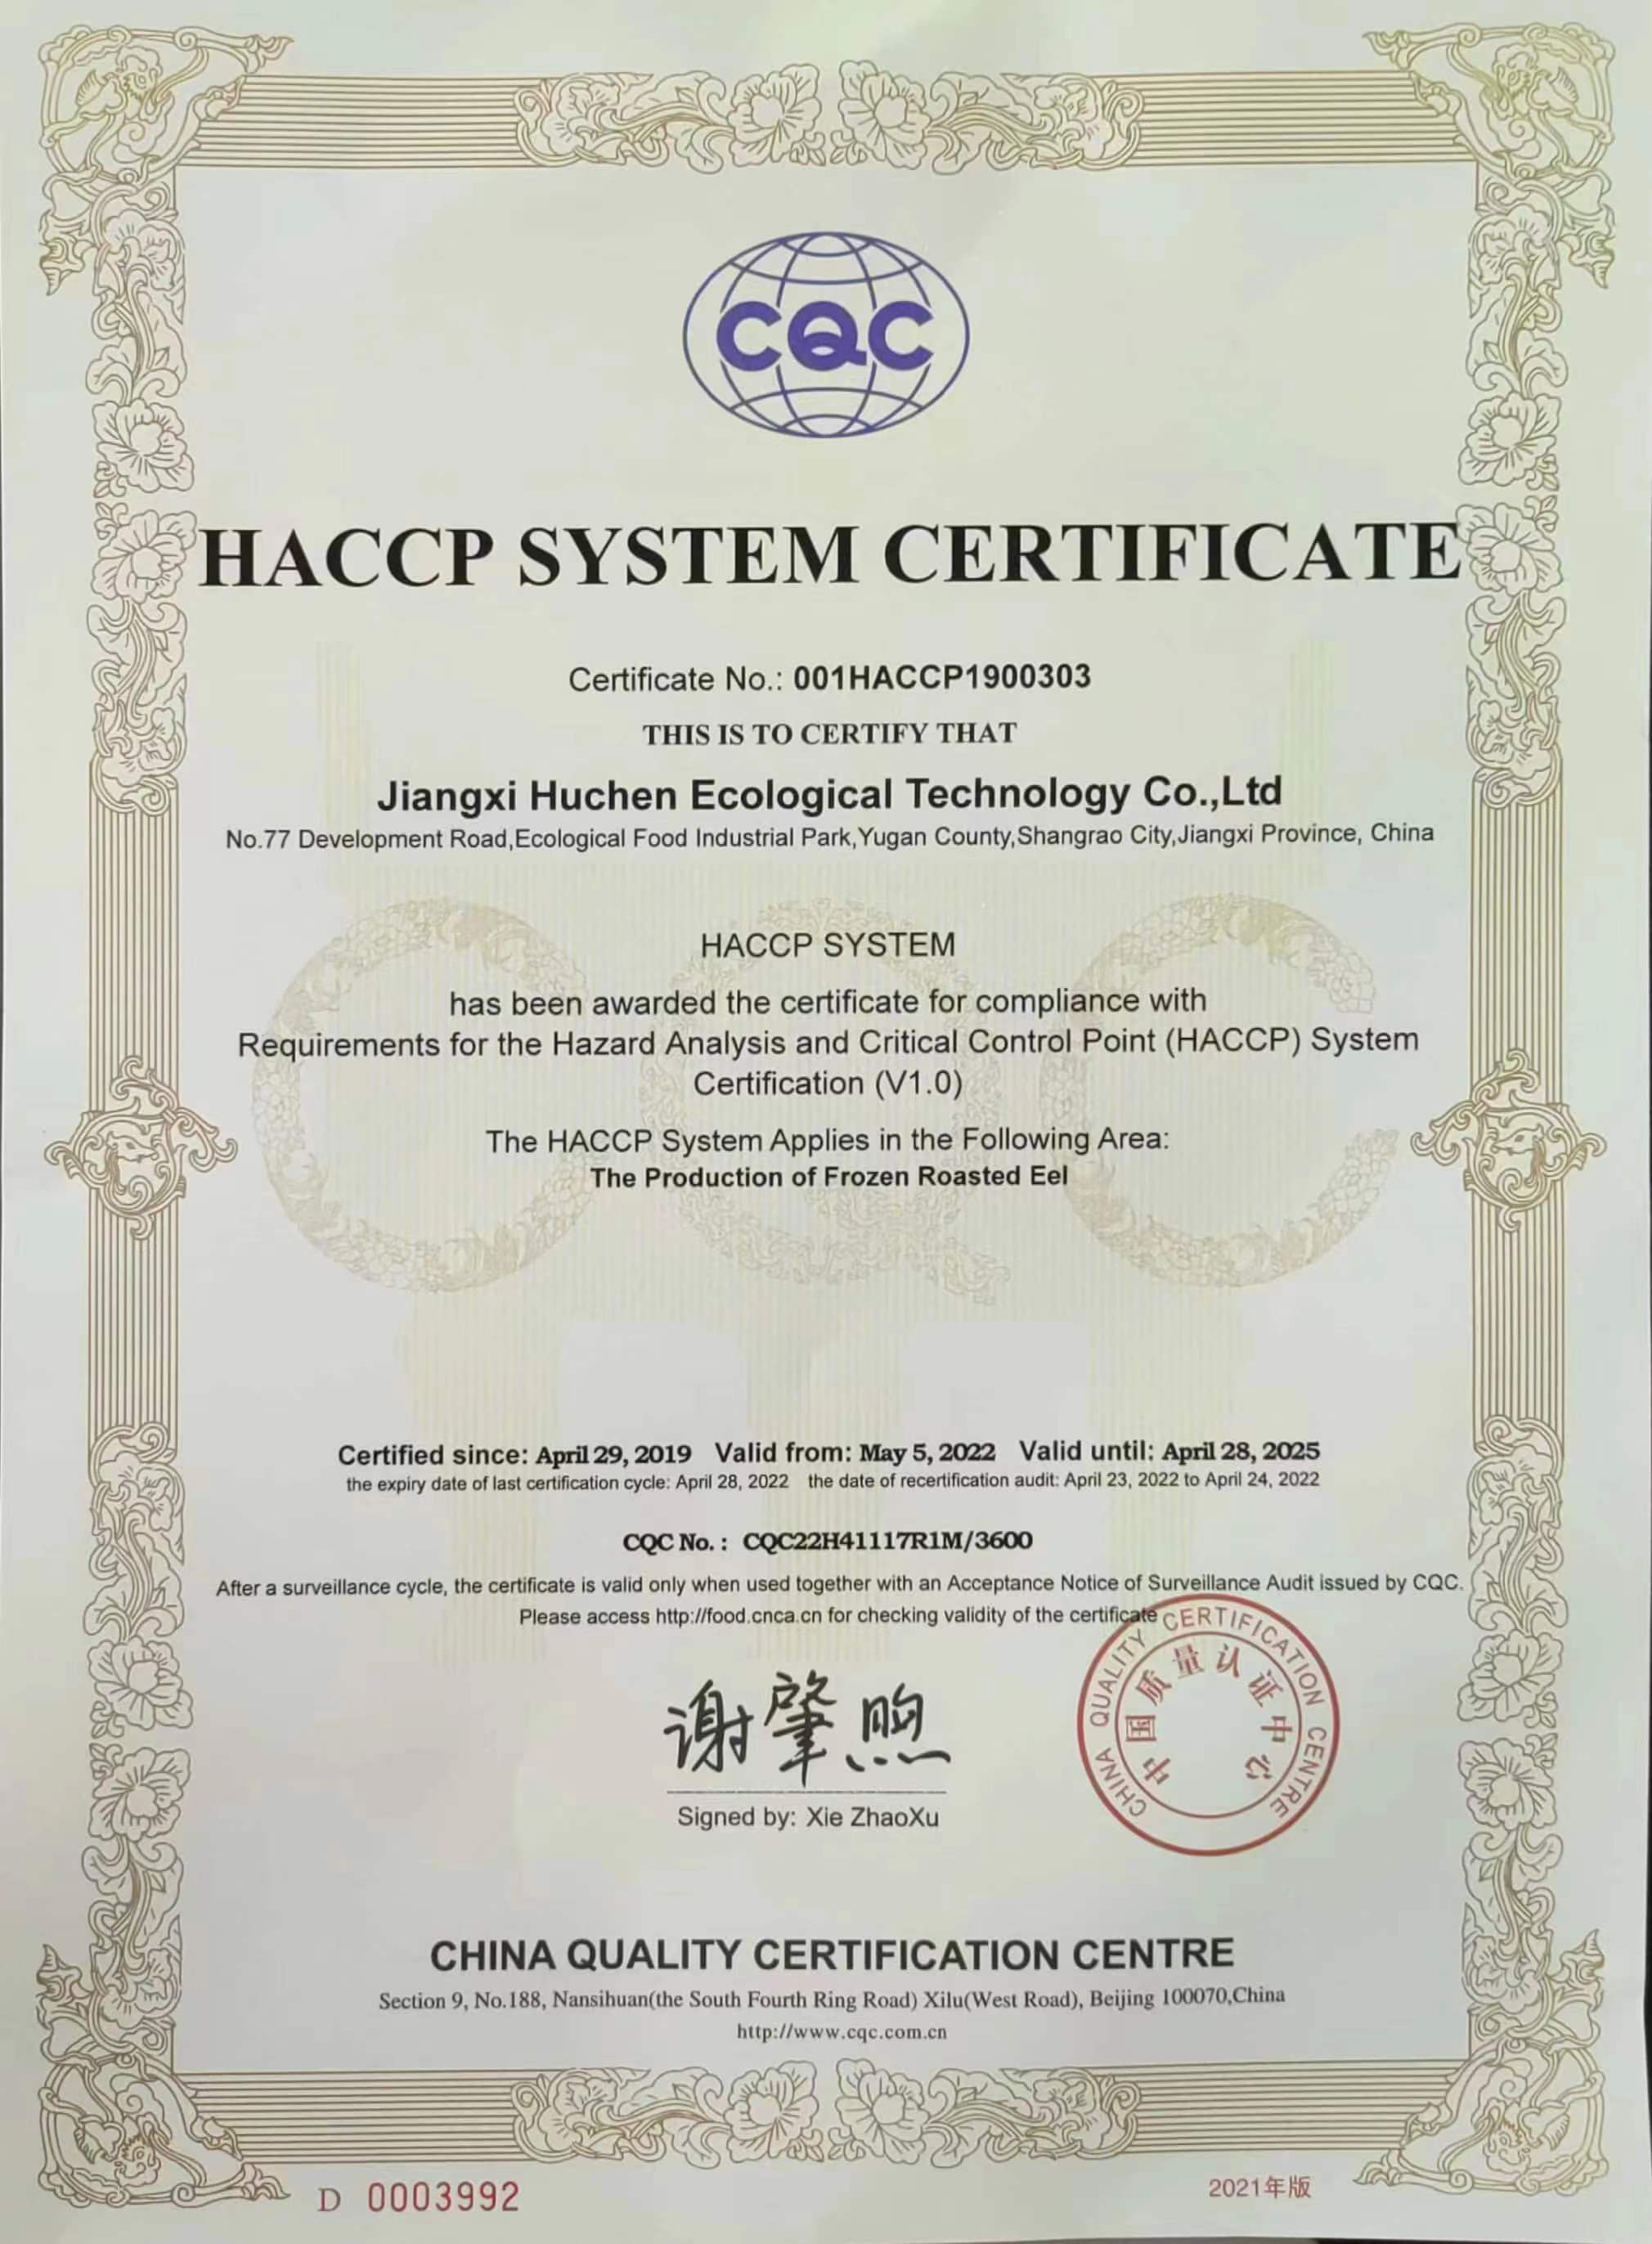 HACCP rendszer tanúsítás